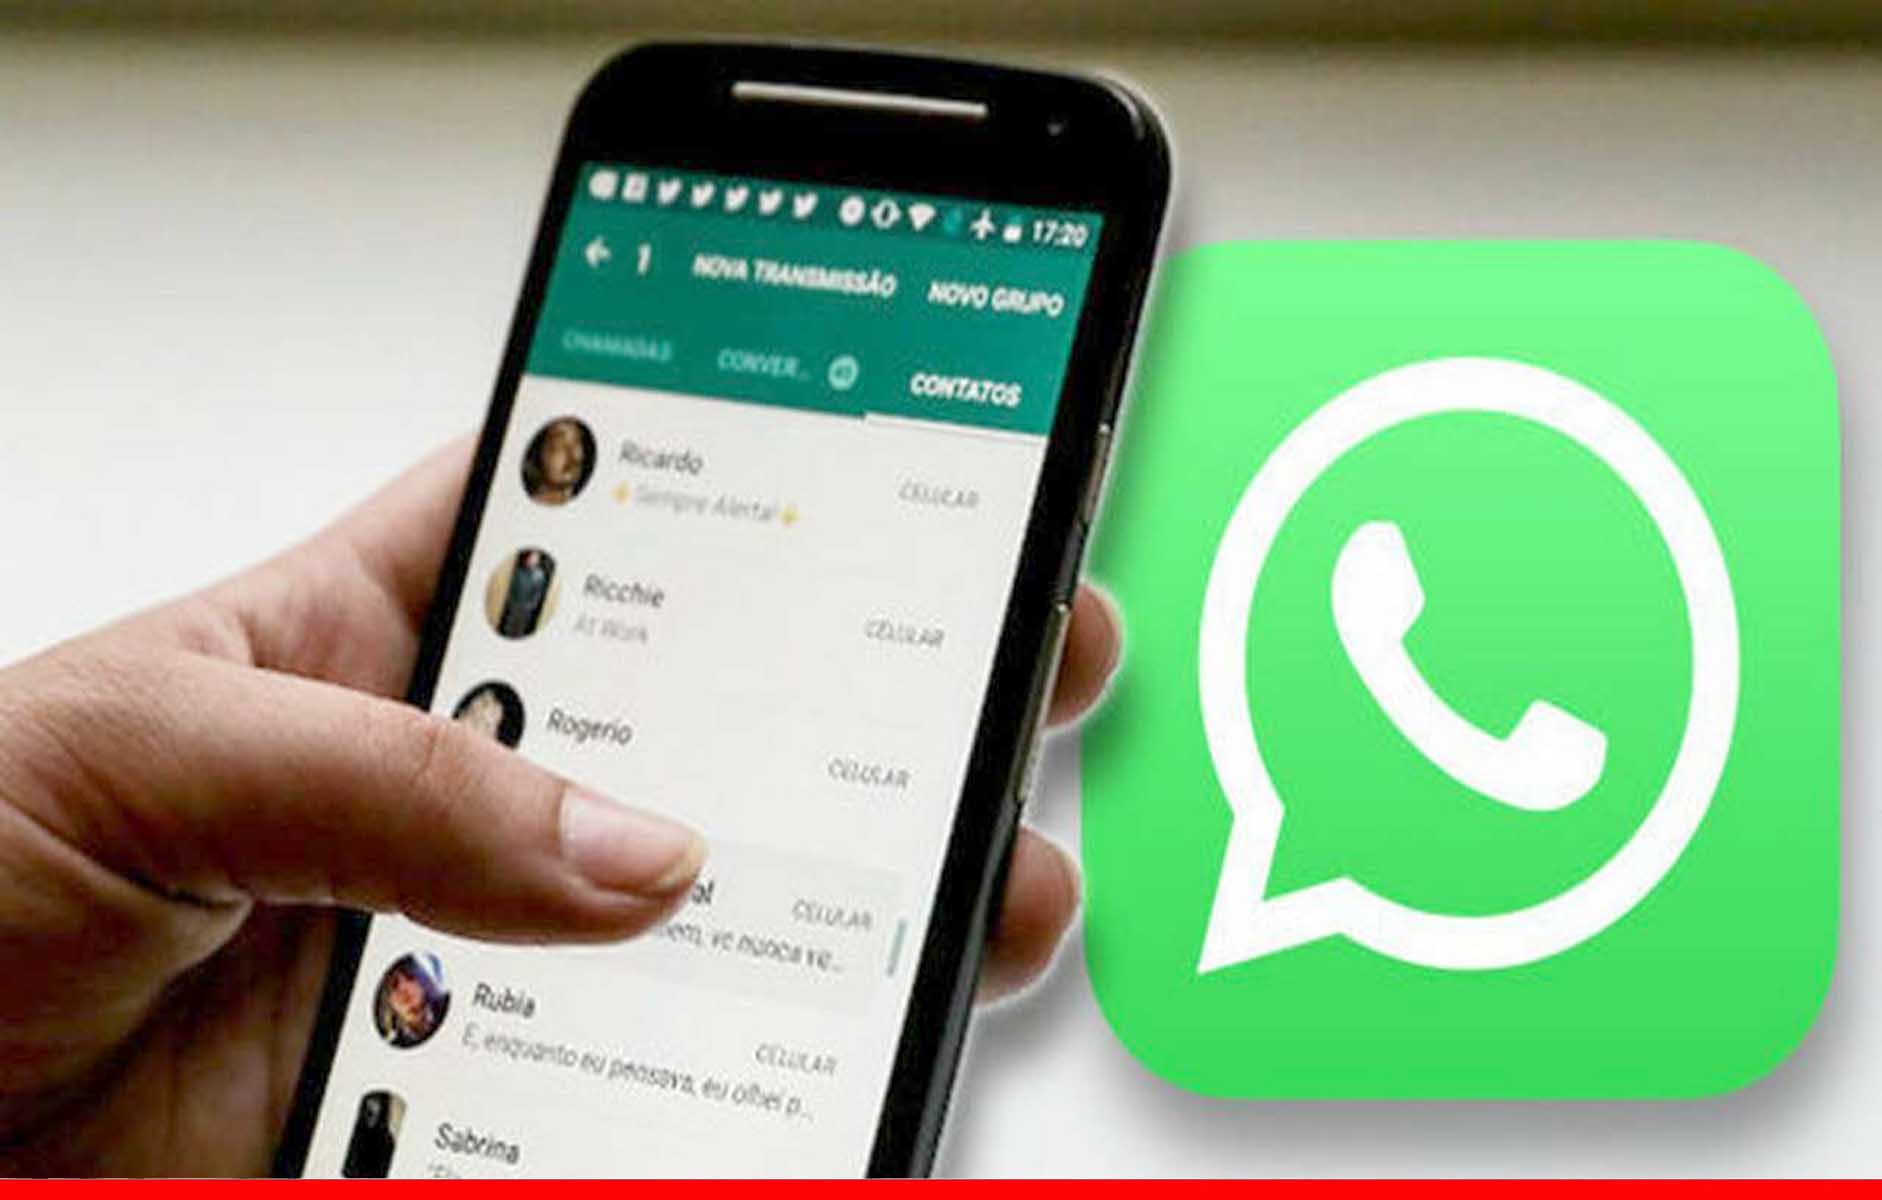 WhatsApp को झटका, आयरलैंड में लगा 22.5 करोड़ यूरो का जुर्माना